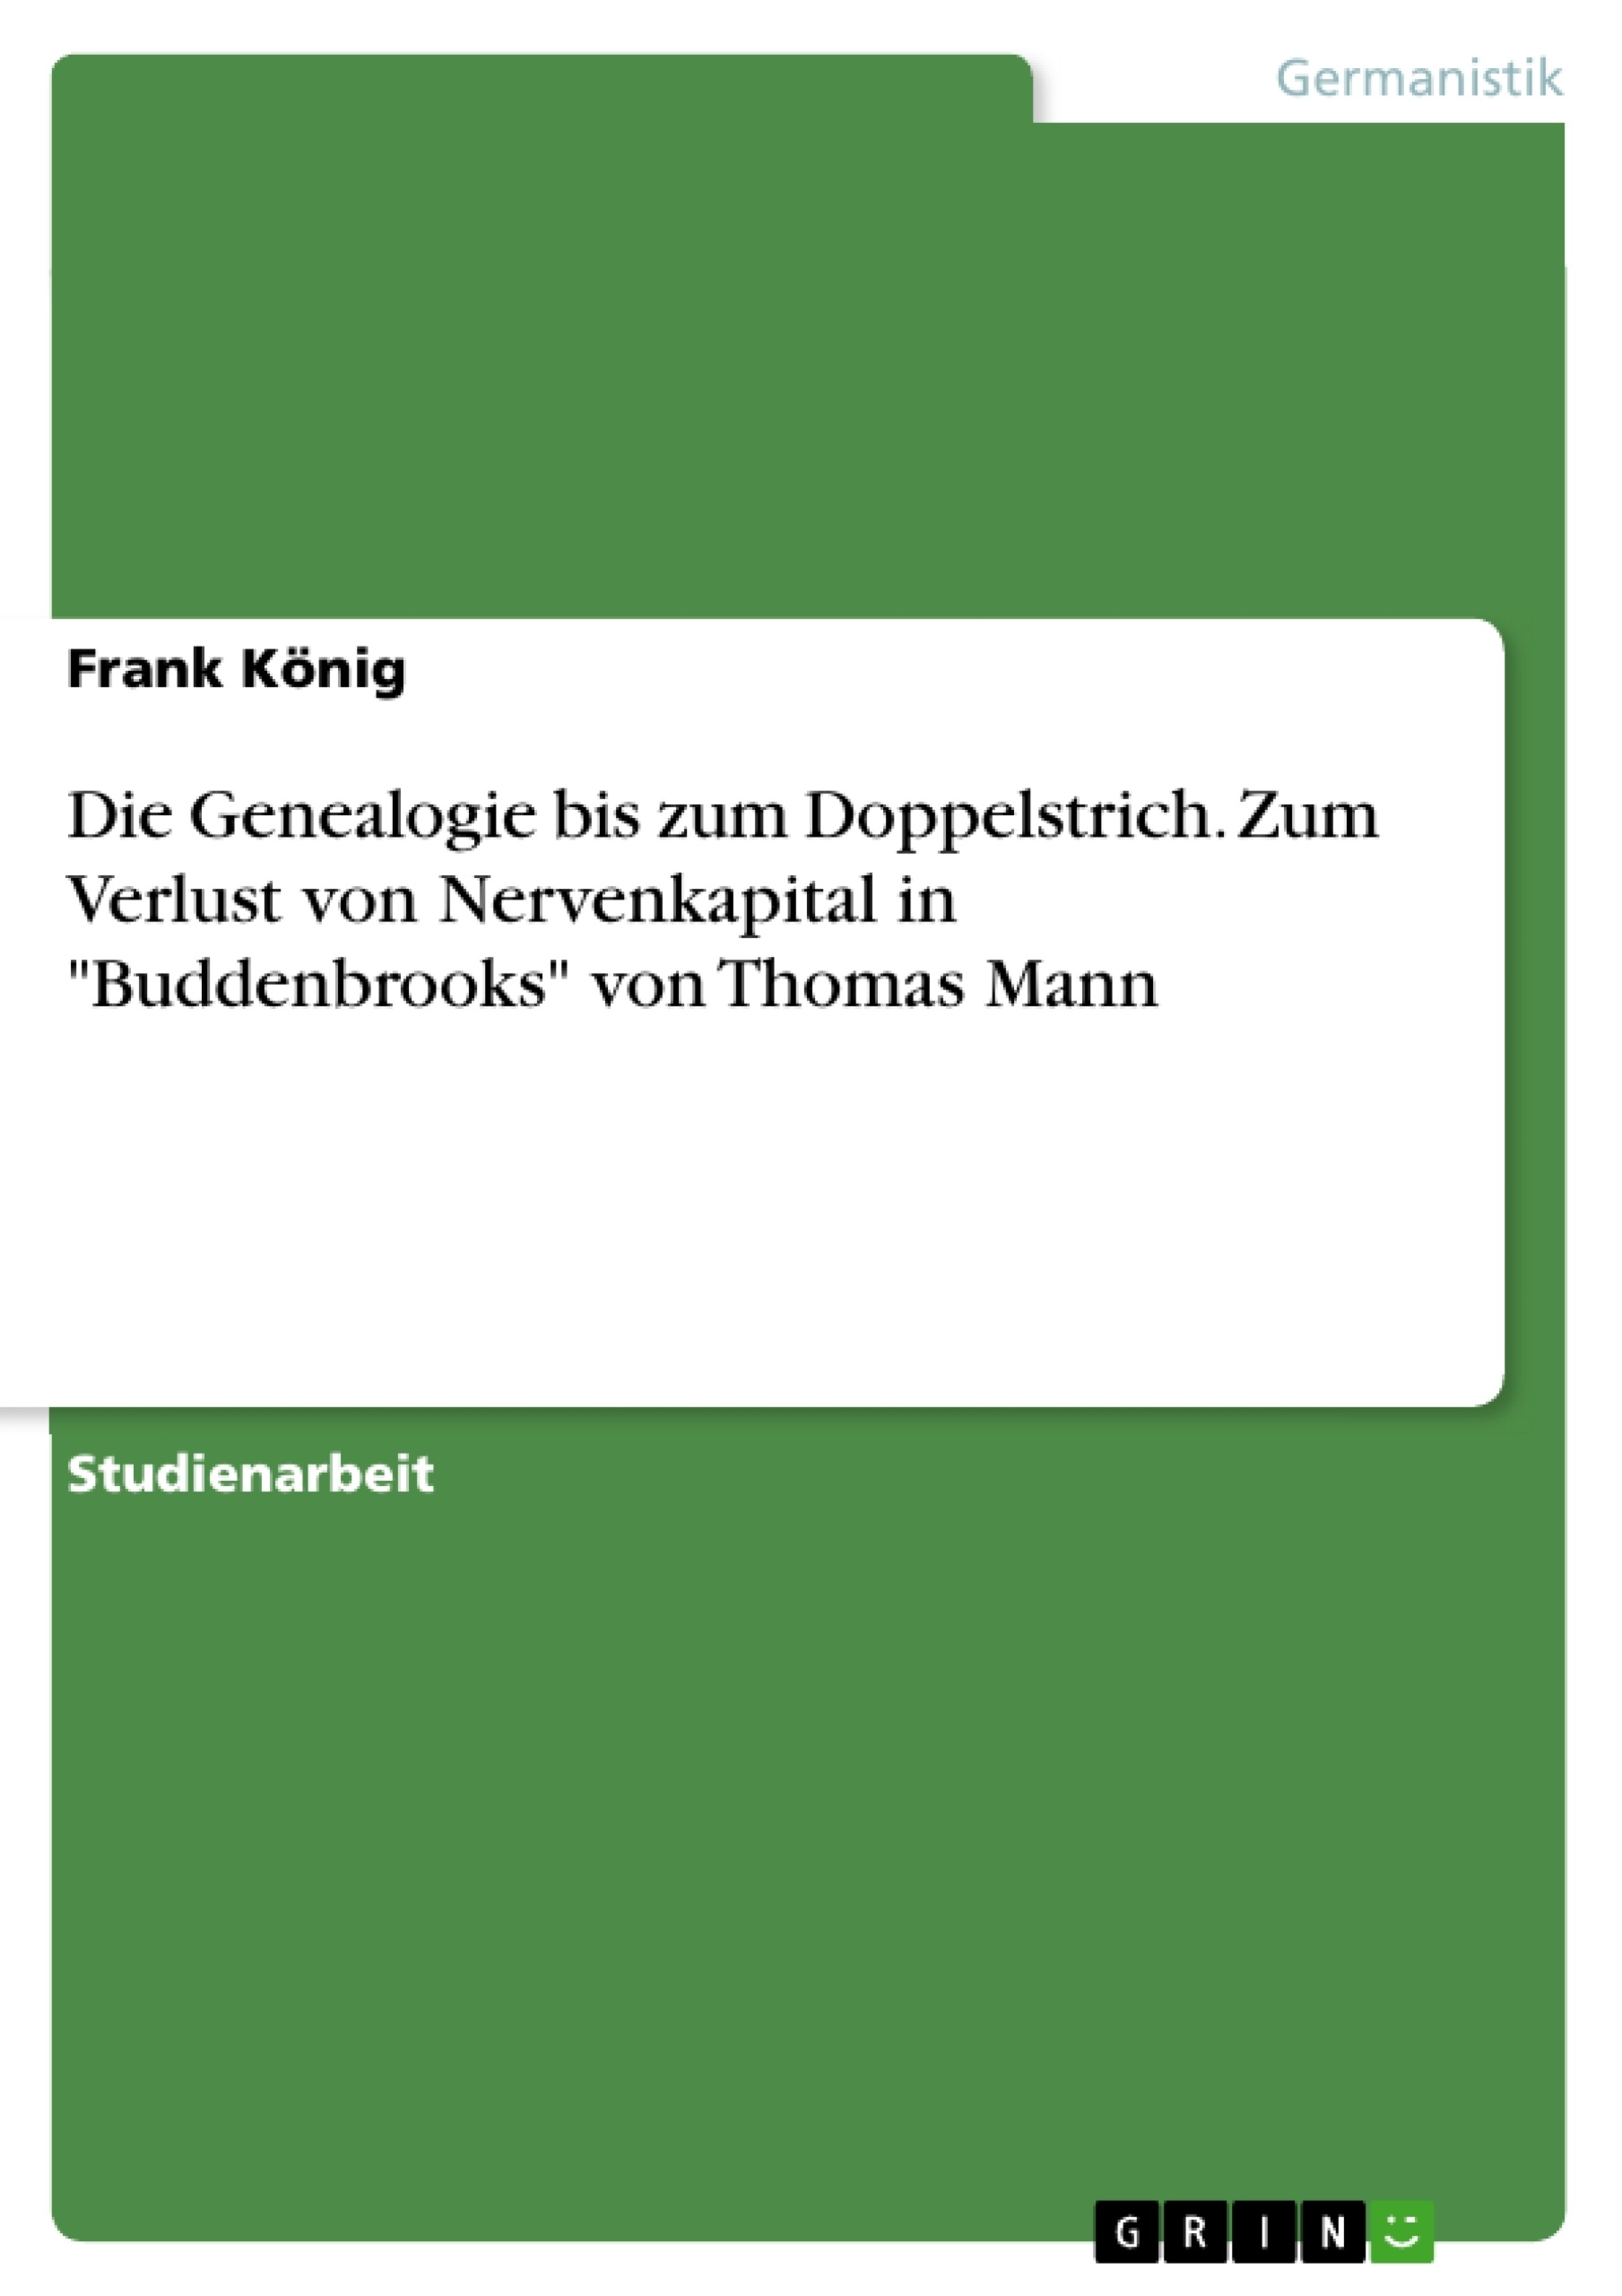 Titre: Die Genealogie bis zum Doppelstrich. Zum Verlust von Nervenkapital in "Buddenbrooks" von Thomas Mann